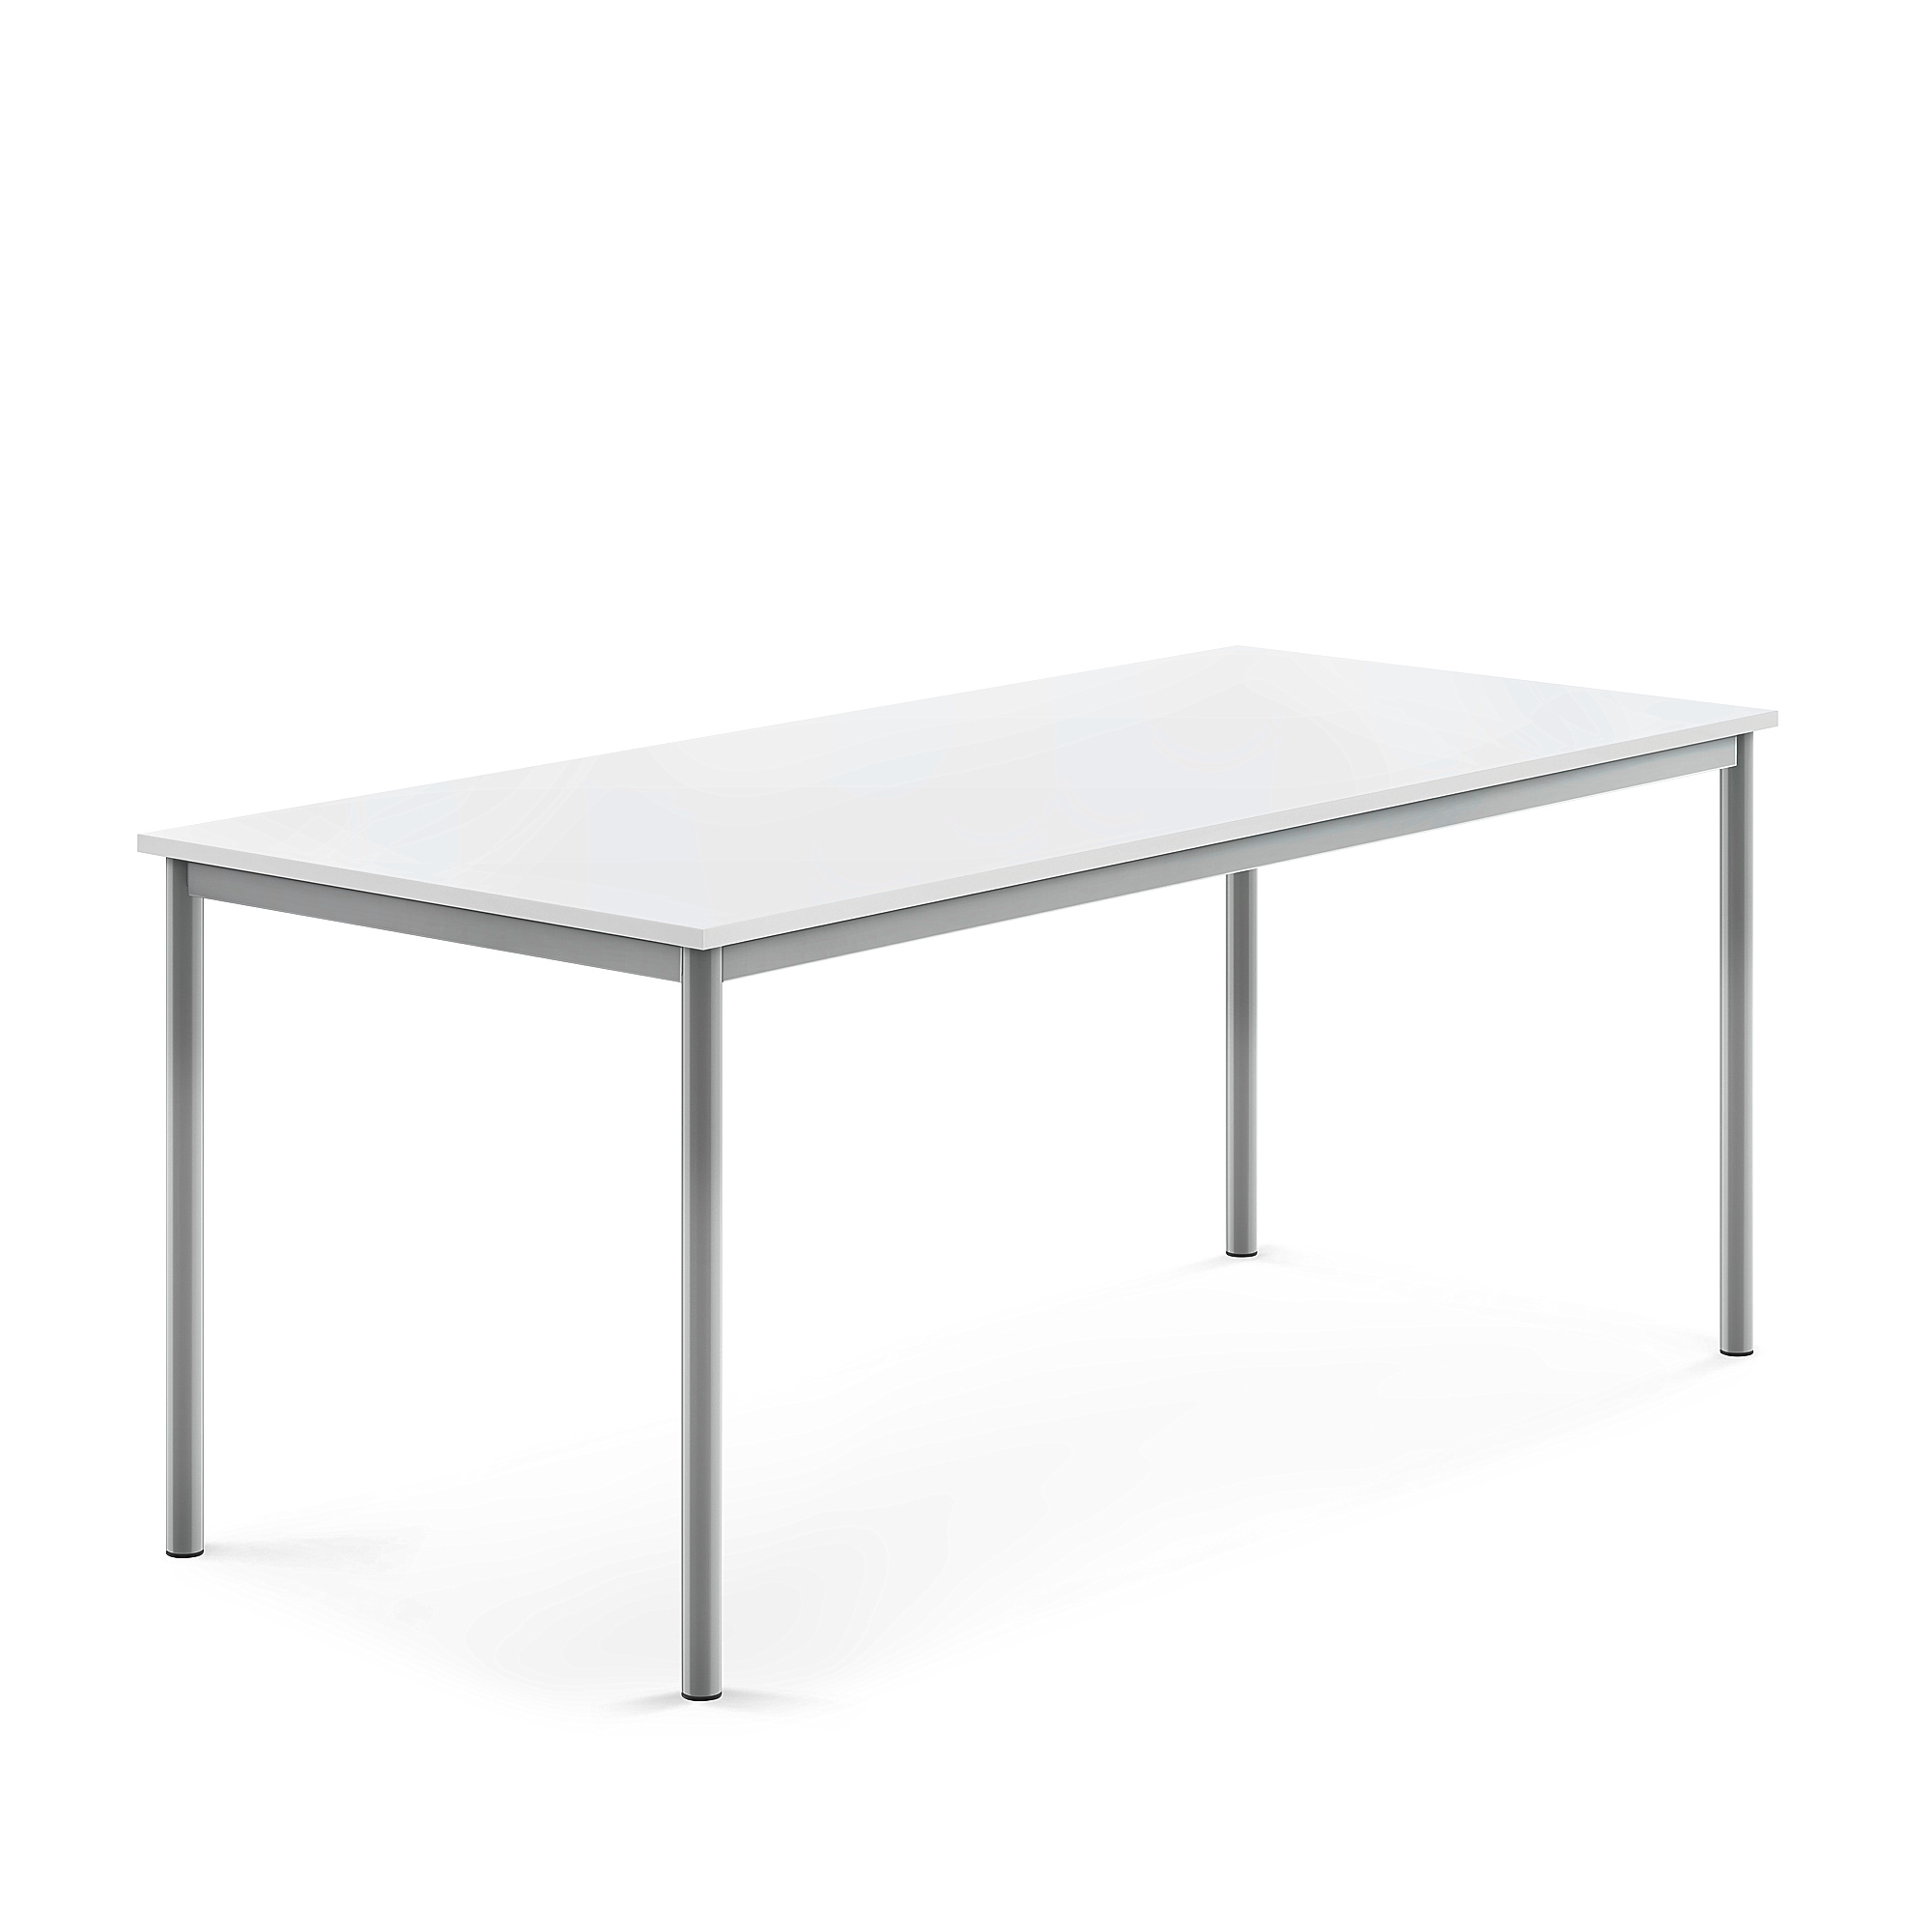 Stůl SONITUS, 1800x800x720 mm, stříbrné nohy, HPL deska tlumící hluk, bílá